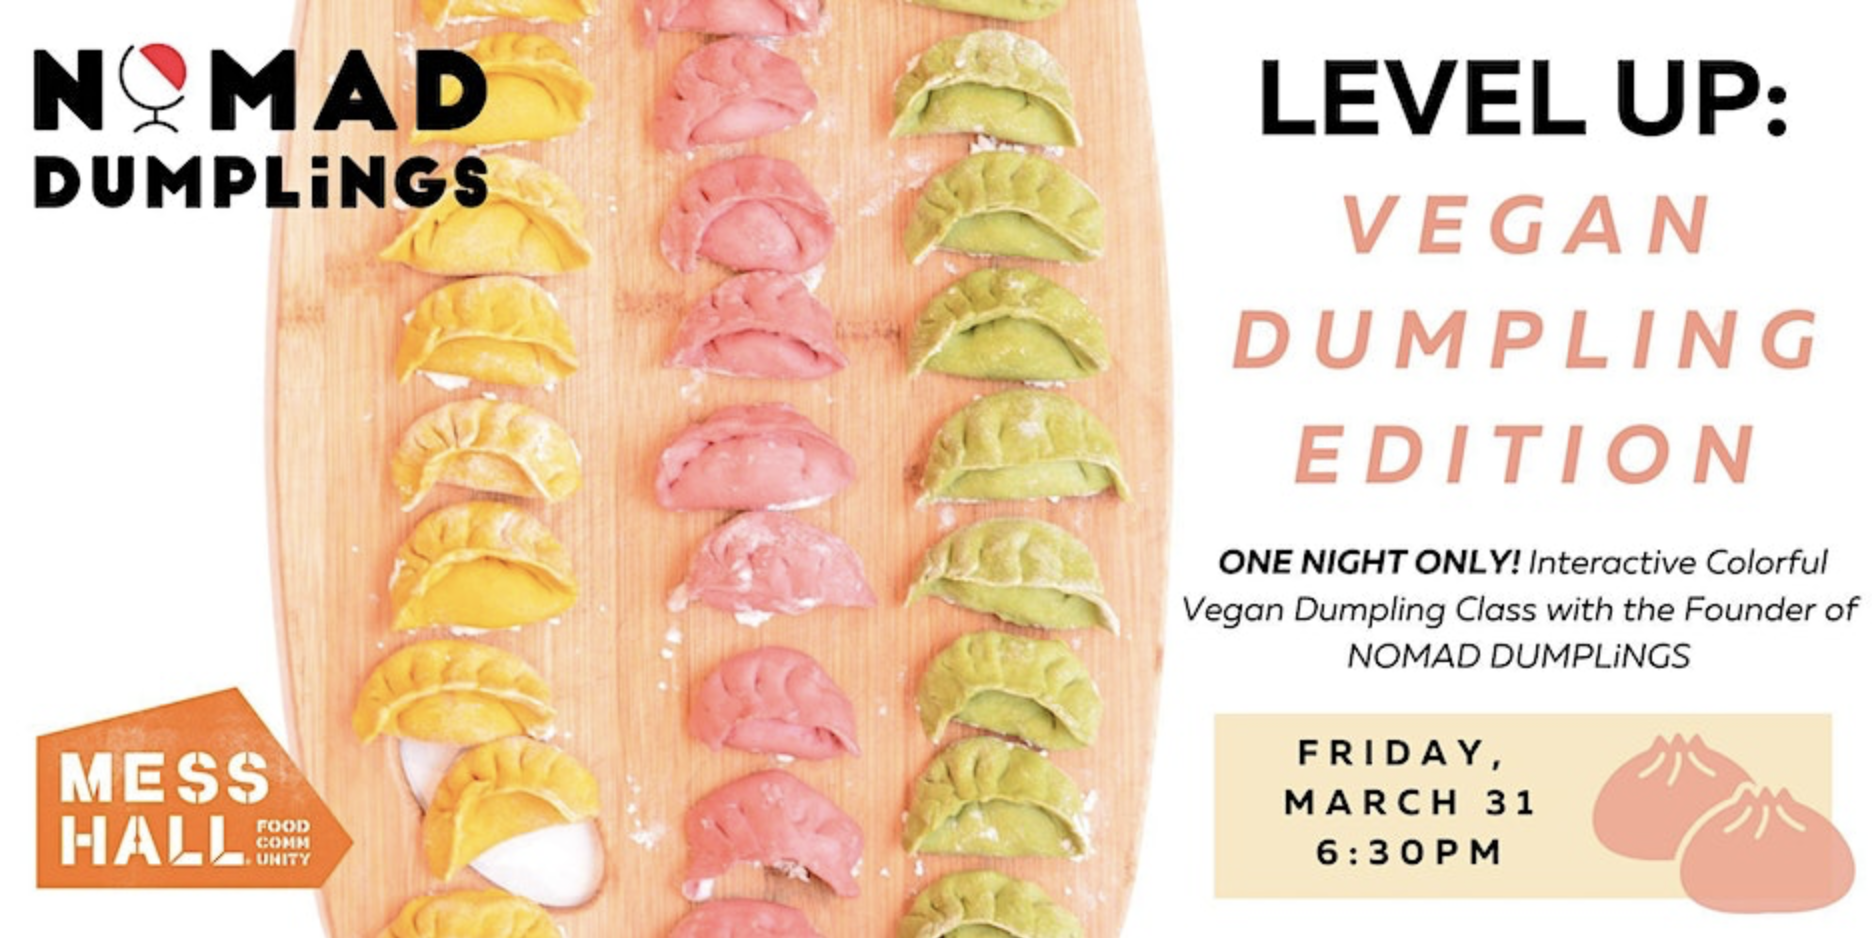 LEVEL UP: Vegan Dumpling Edition